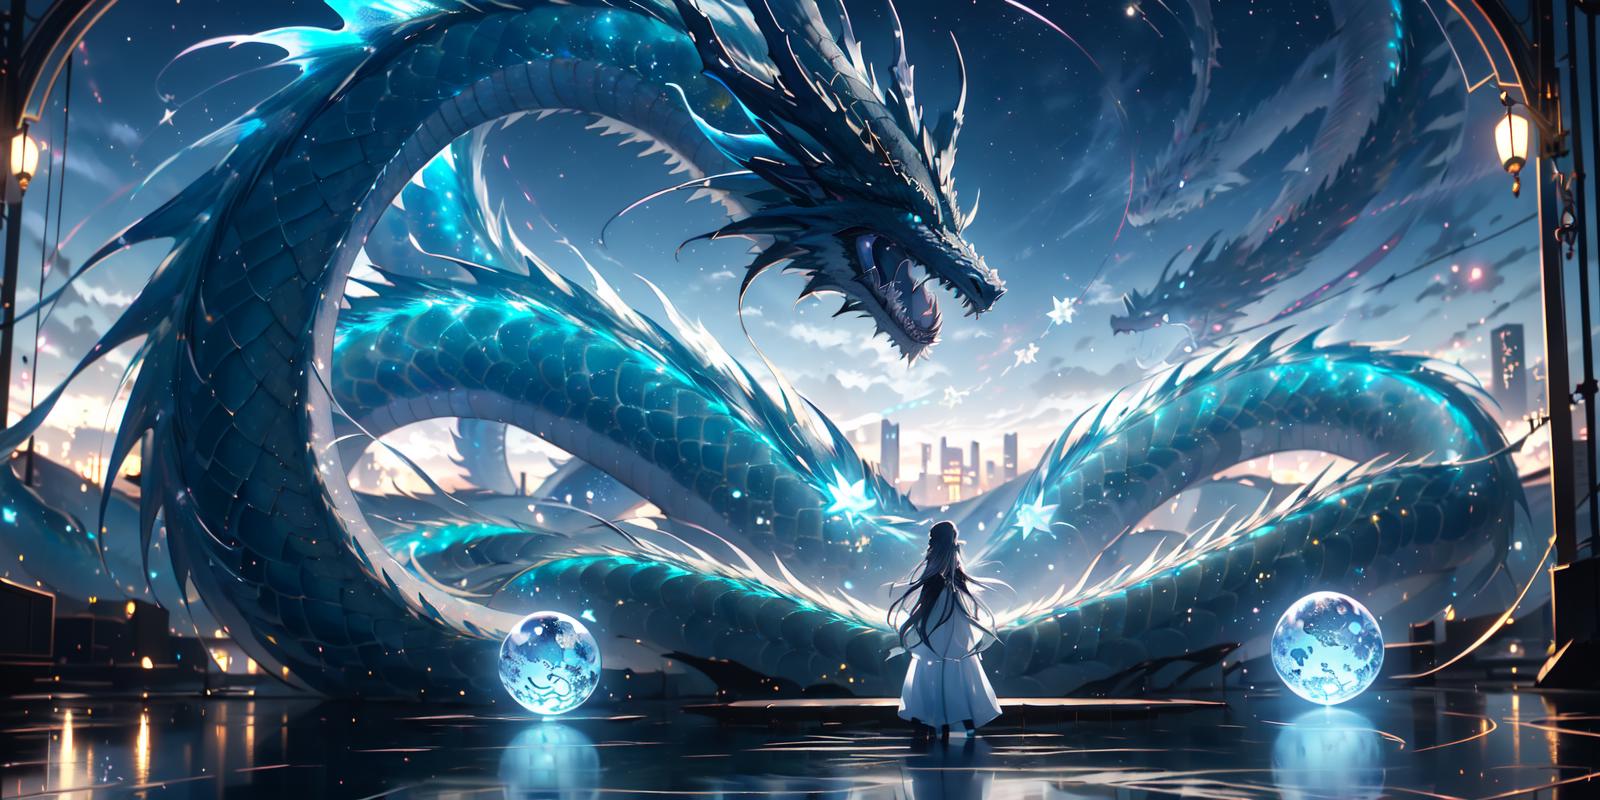 龙神幻想/Chinese dragon Lora image by chosen